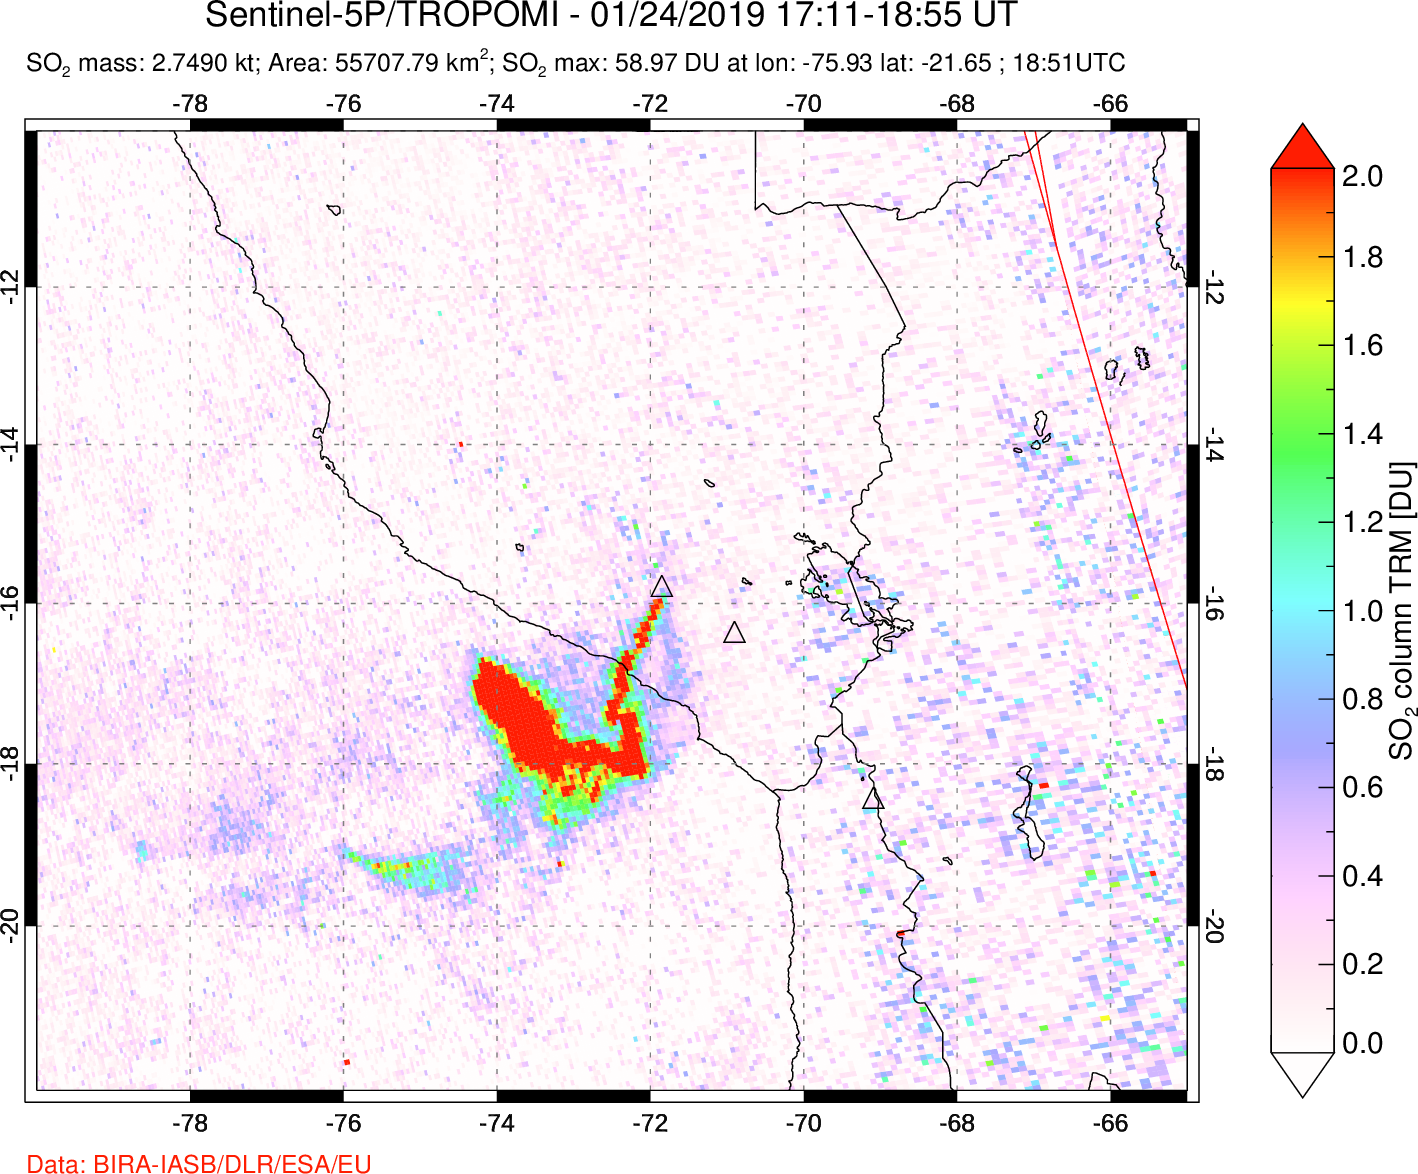 A sulfur dioxide image over Peru on Jan 24, 2019.